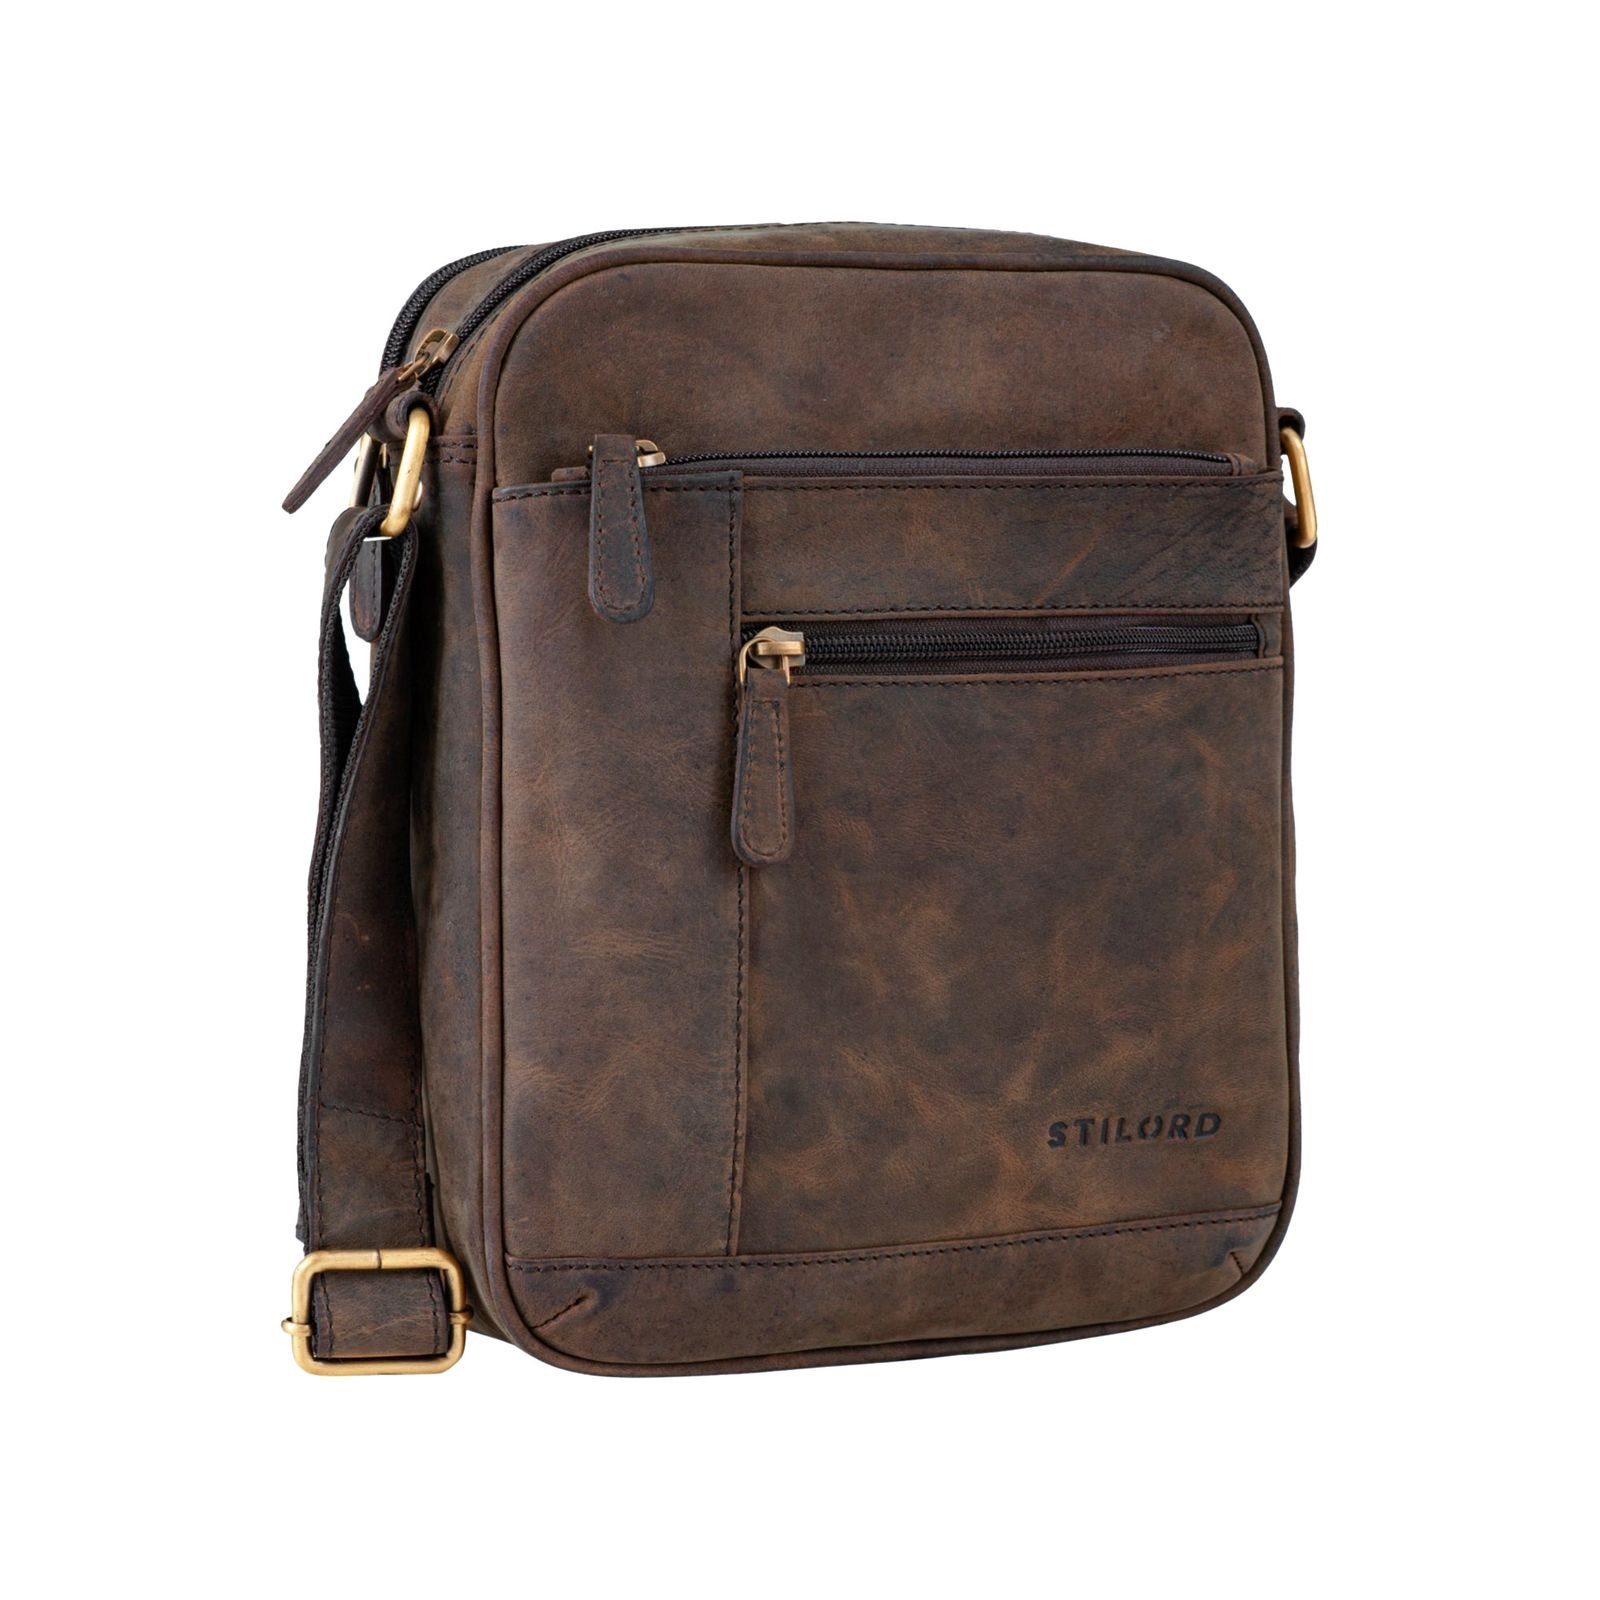 "Diego" Vintage - Herrentasche Leder braun klein STILORD Messenger Bag zamora